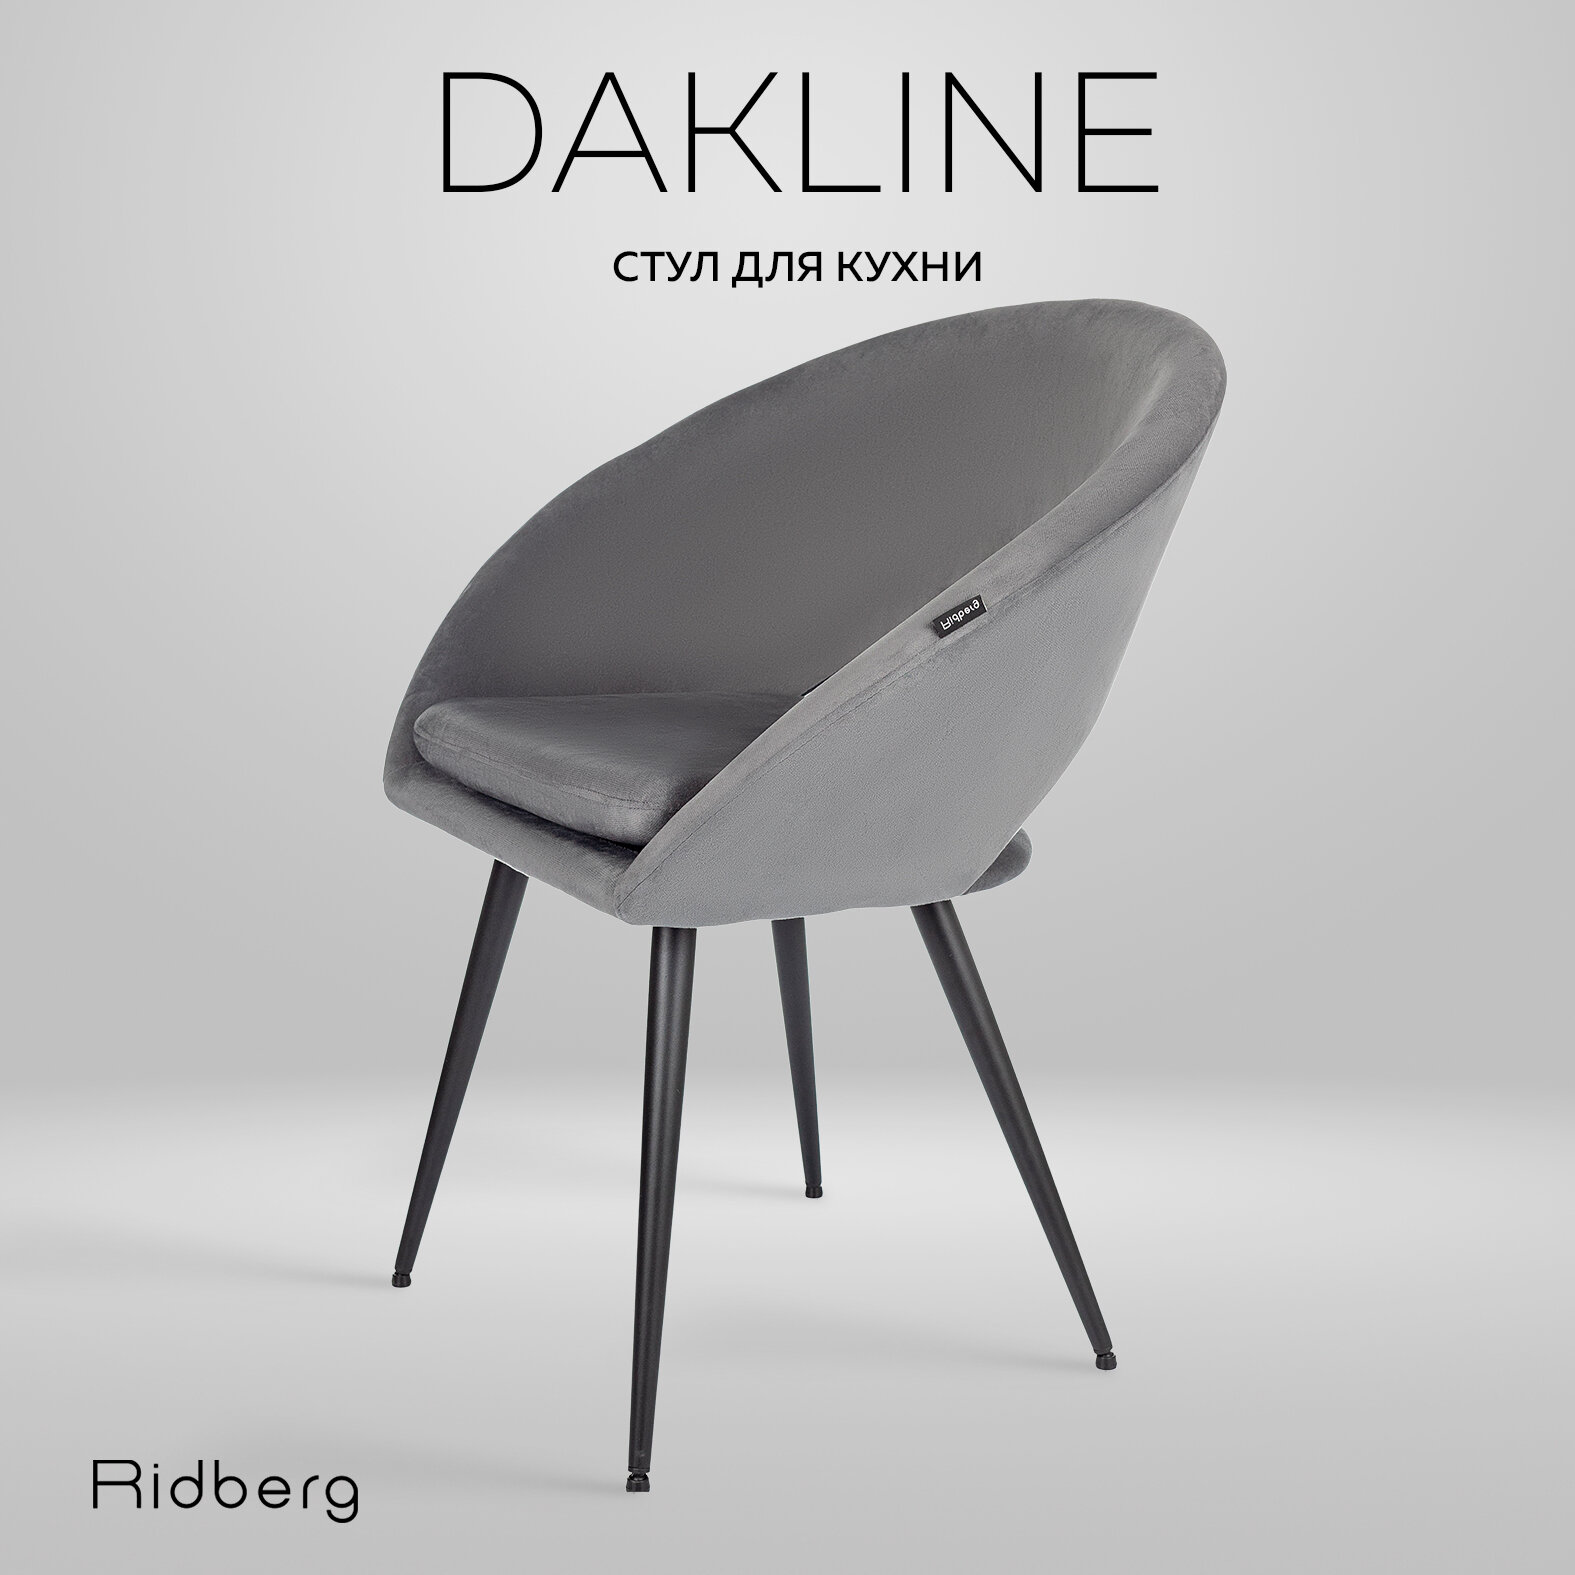 Стул для кухни Ridberg Dakline (велюр, серый), столовой, гостиной, офисный, компьютерный, кухонный, со спинкой, на ножках, мягкий, 1 шт.